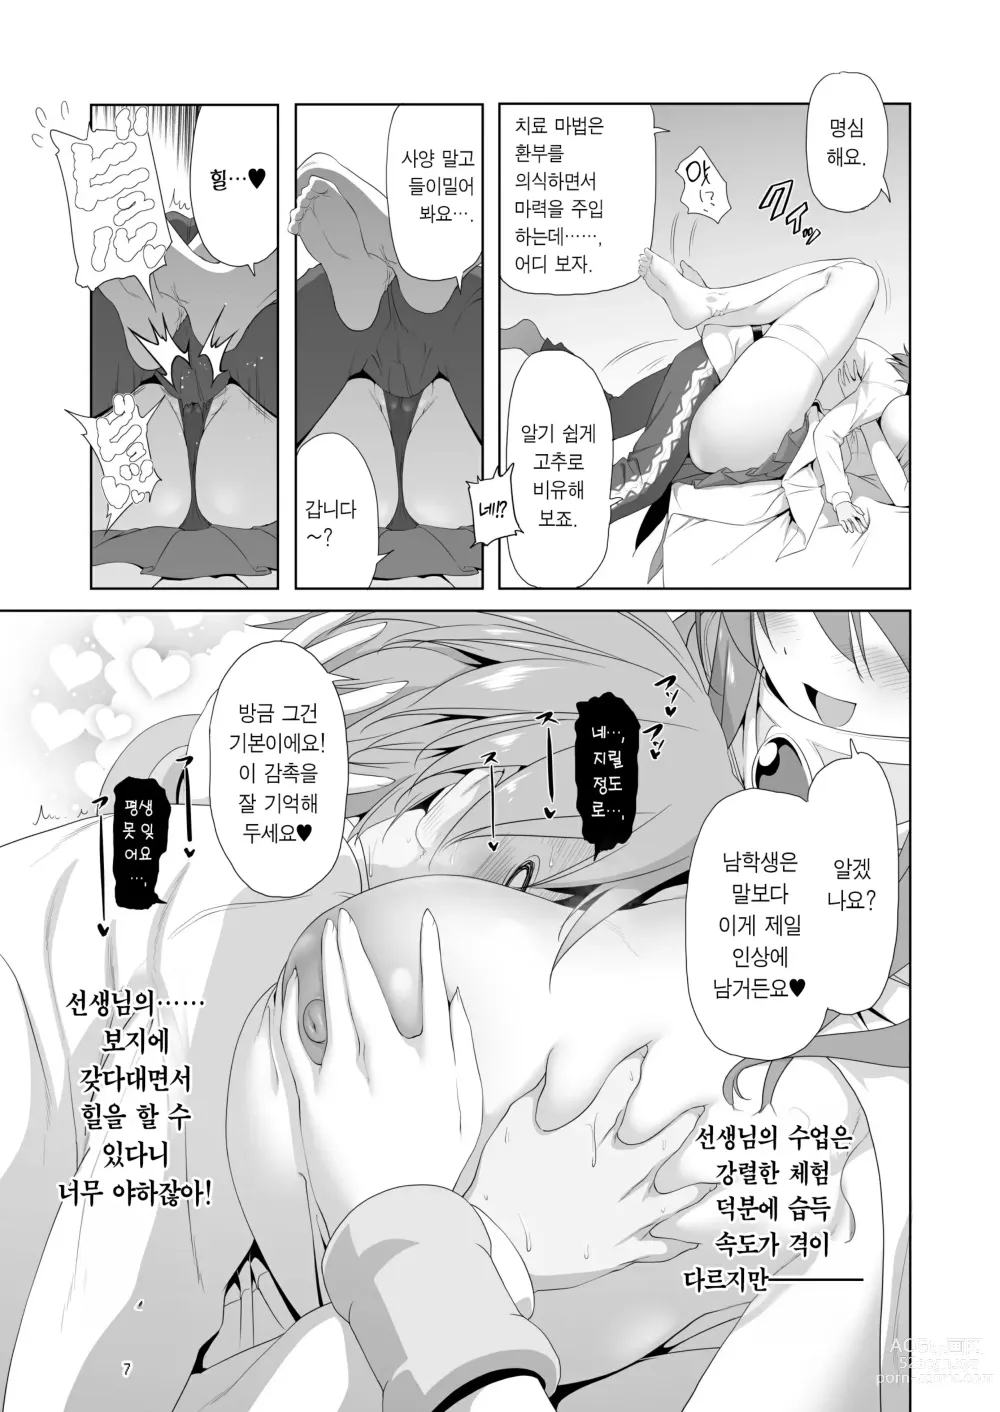 Page 7 of doujinshi 참으로 유감이지만 모험의 서 9는 사라져버렸습니다.